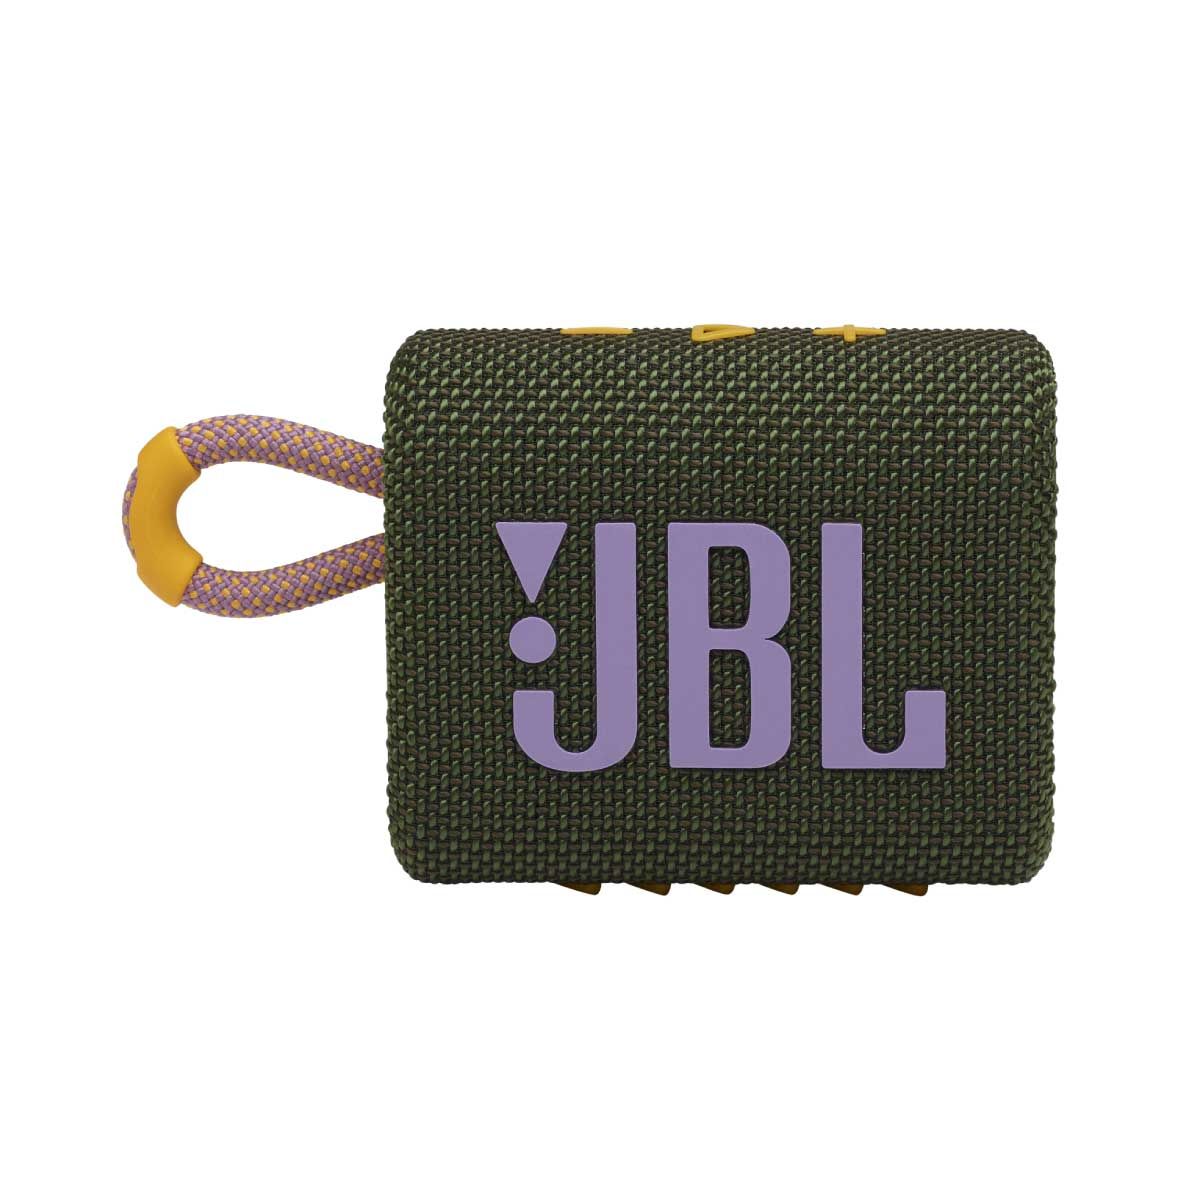 JBL ลำโพงพกพาบลูทูธ รุ่น GO3/GY สีเทา กันน้ำ/กันฝุ่น